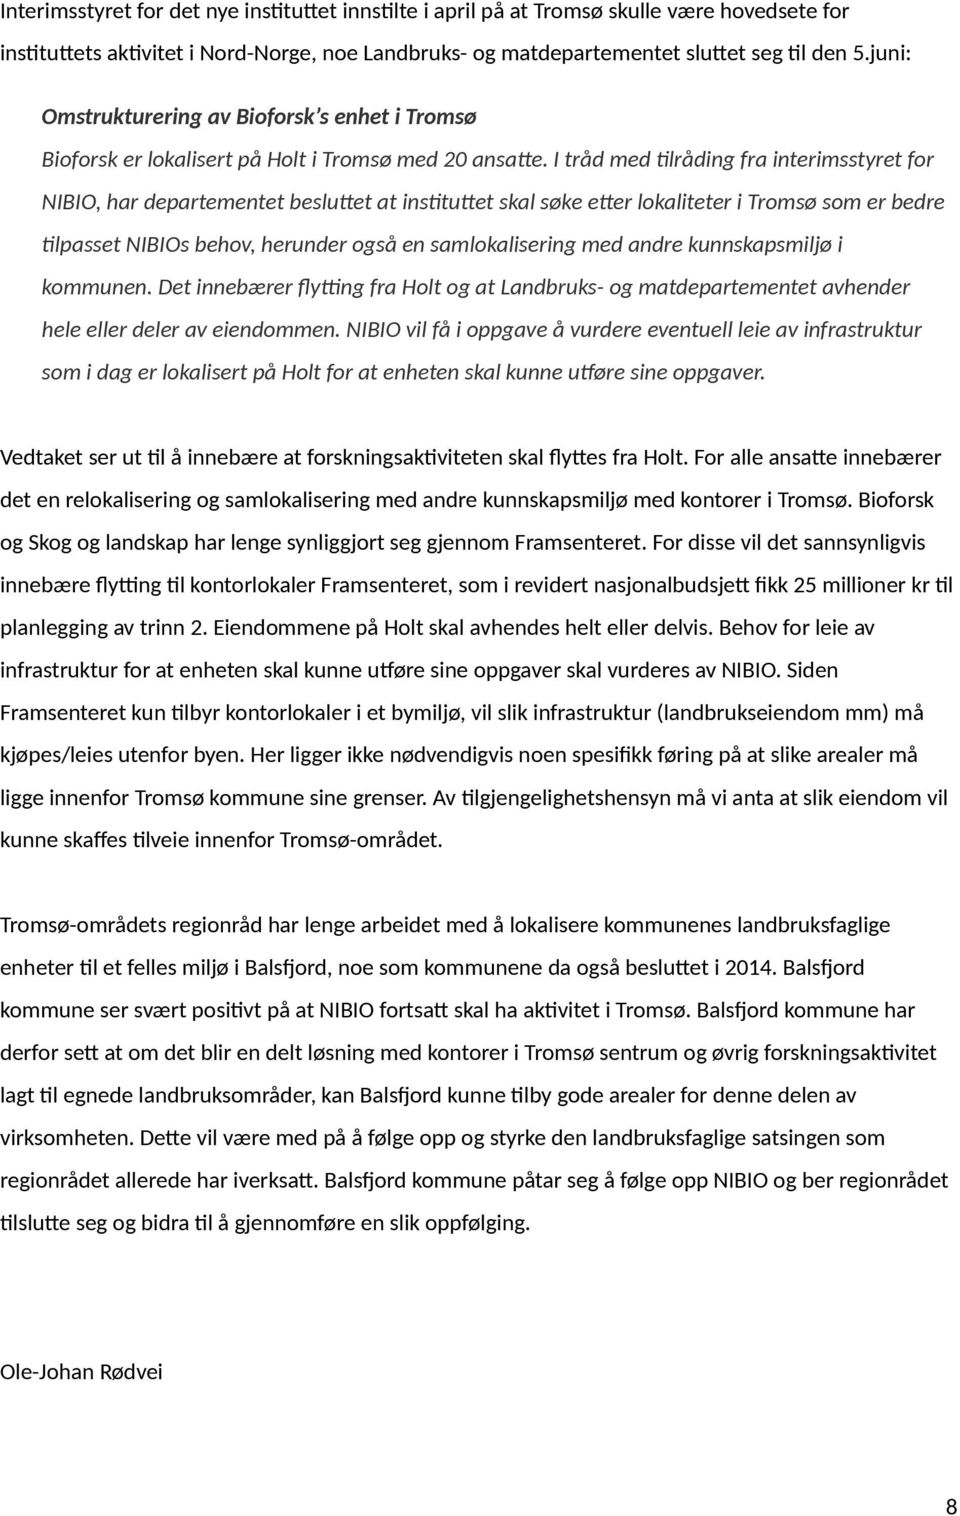 I tråd med tilråding fra interimsstyret for NIBIO, har departementet besluttet at instituttet skal søke etter lokaliteter i Tromsø som er bedre tilpasset NIBIOs behov, herunder også en